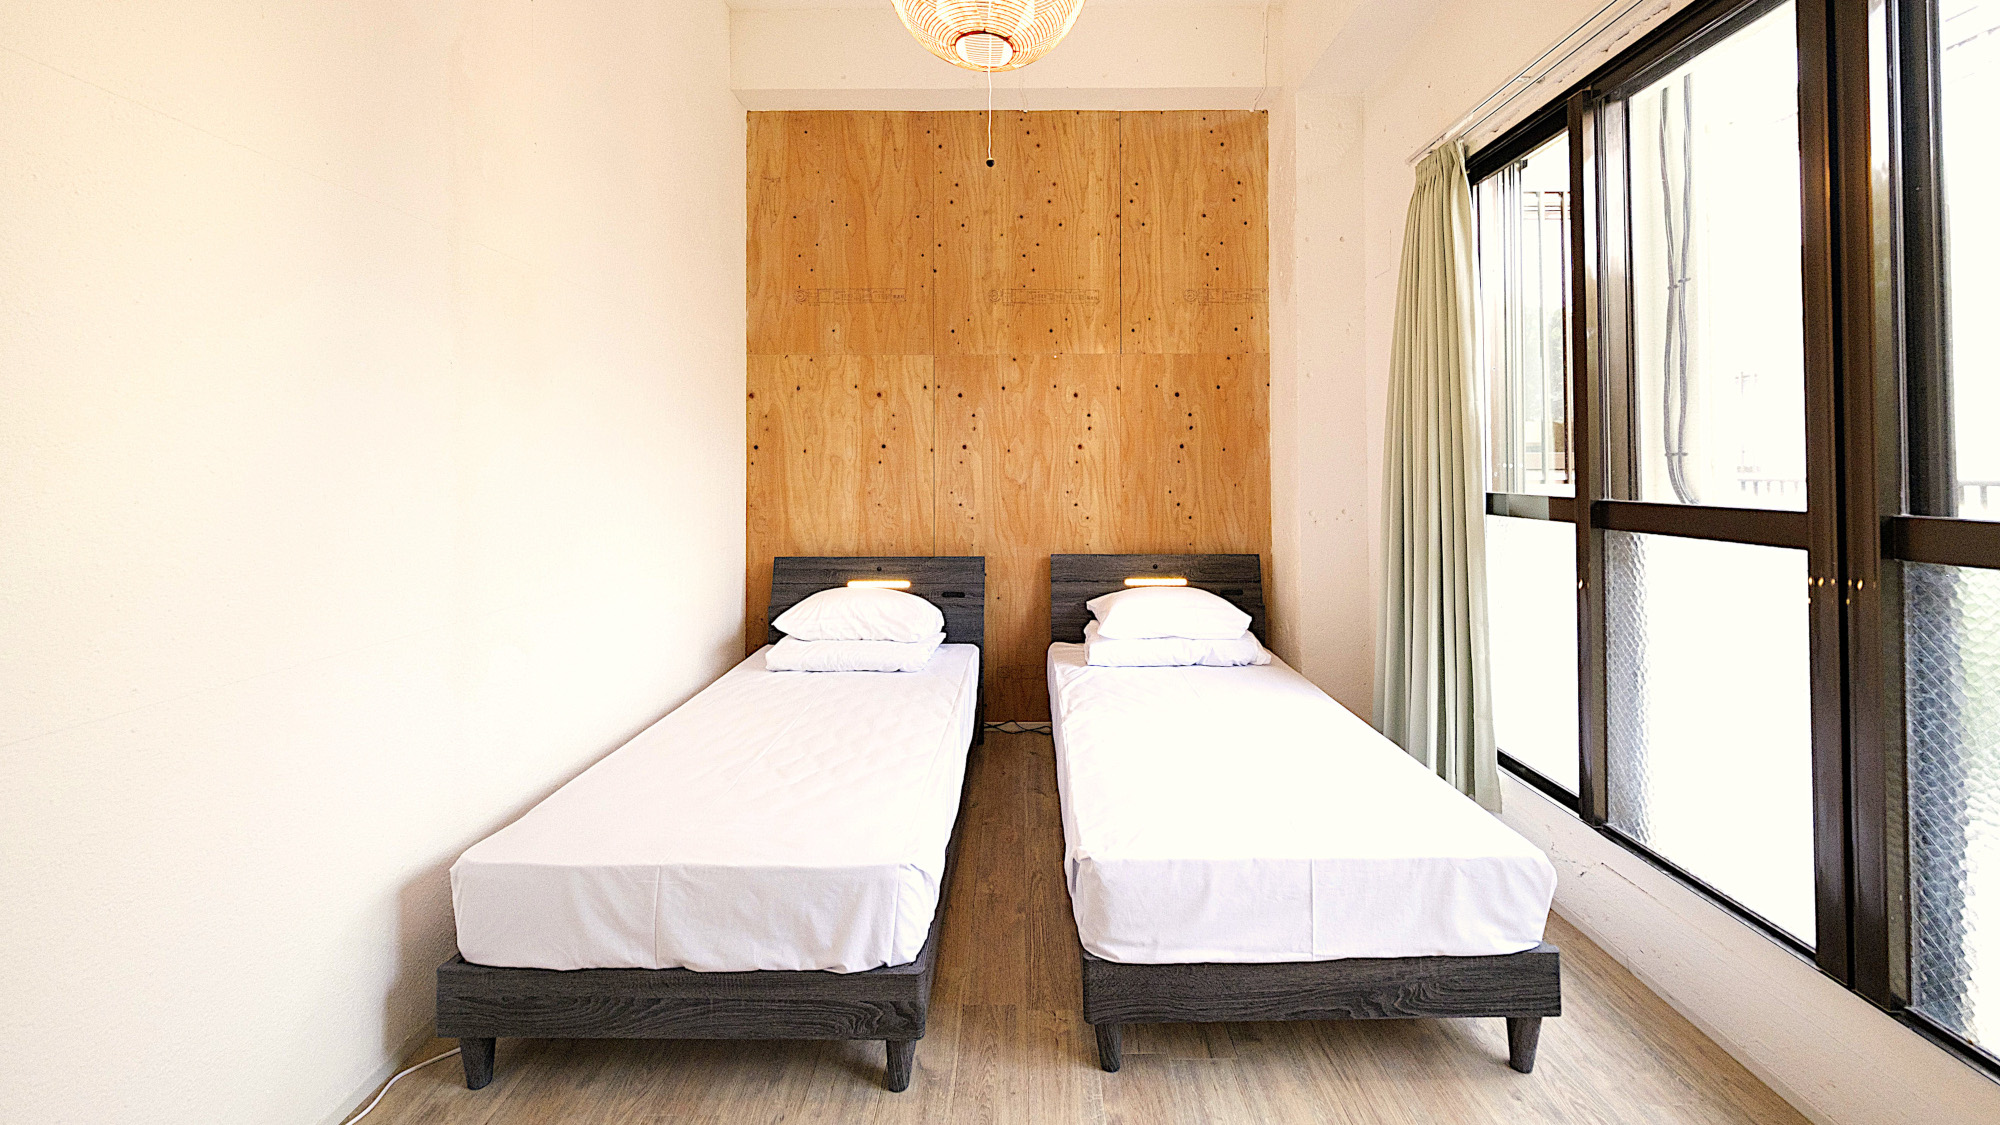 ツインルーム客室例。シングルベッド(99×196cm) を２台設置しております。